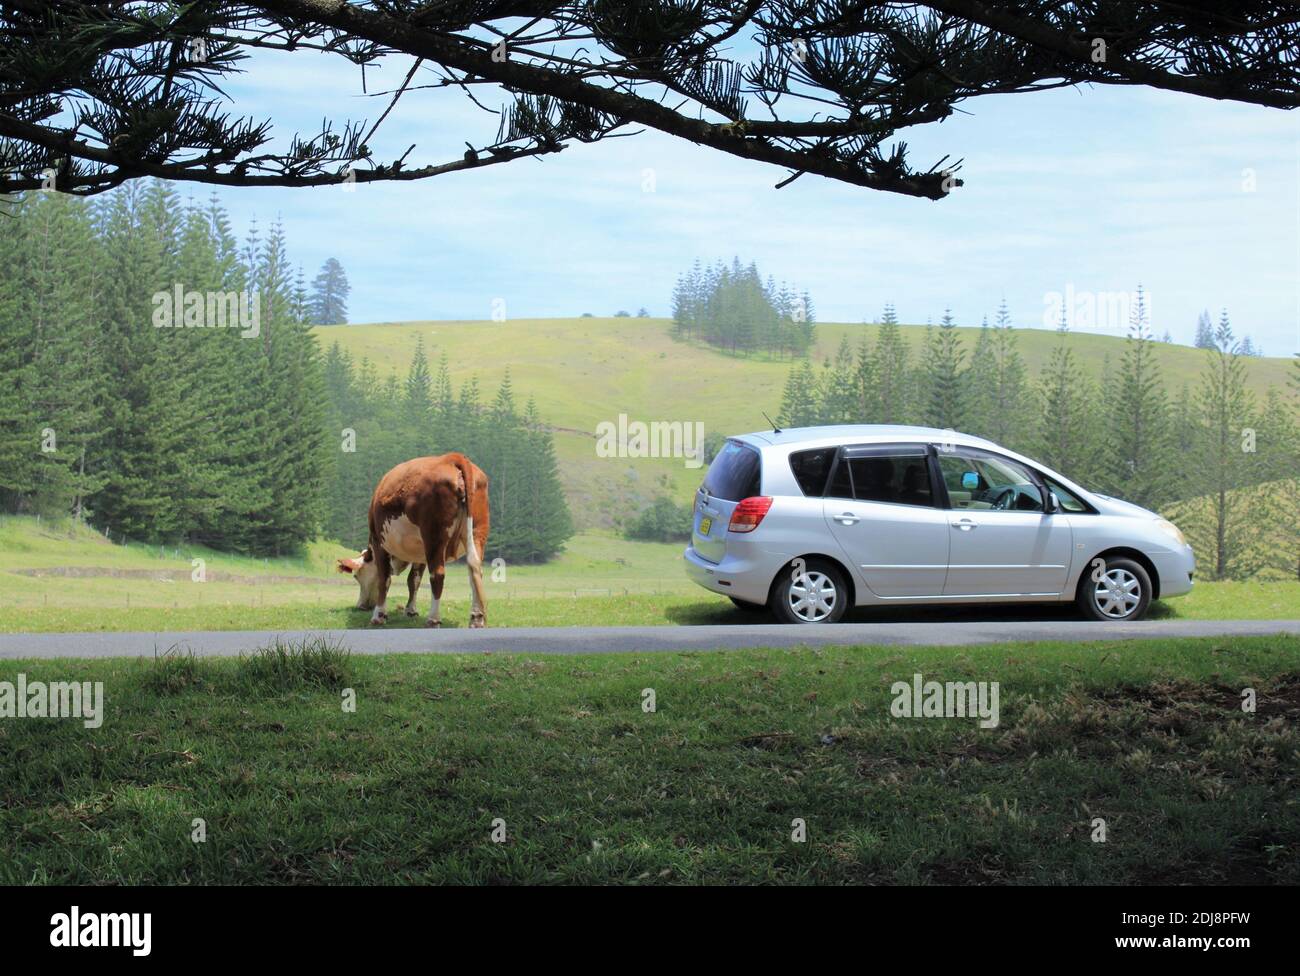 Isola Norfolk. Mucca aperta-pascolo accanto a auto parcheggiata, nella zona del Patrimonio Mondiale, Kingston. Endemico Norfolk Island Pines in background. Foto Stock